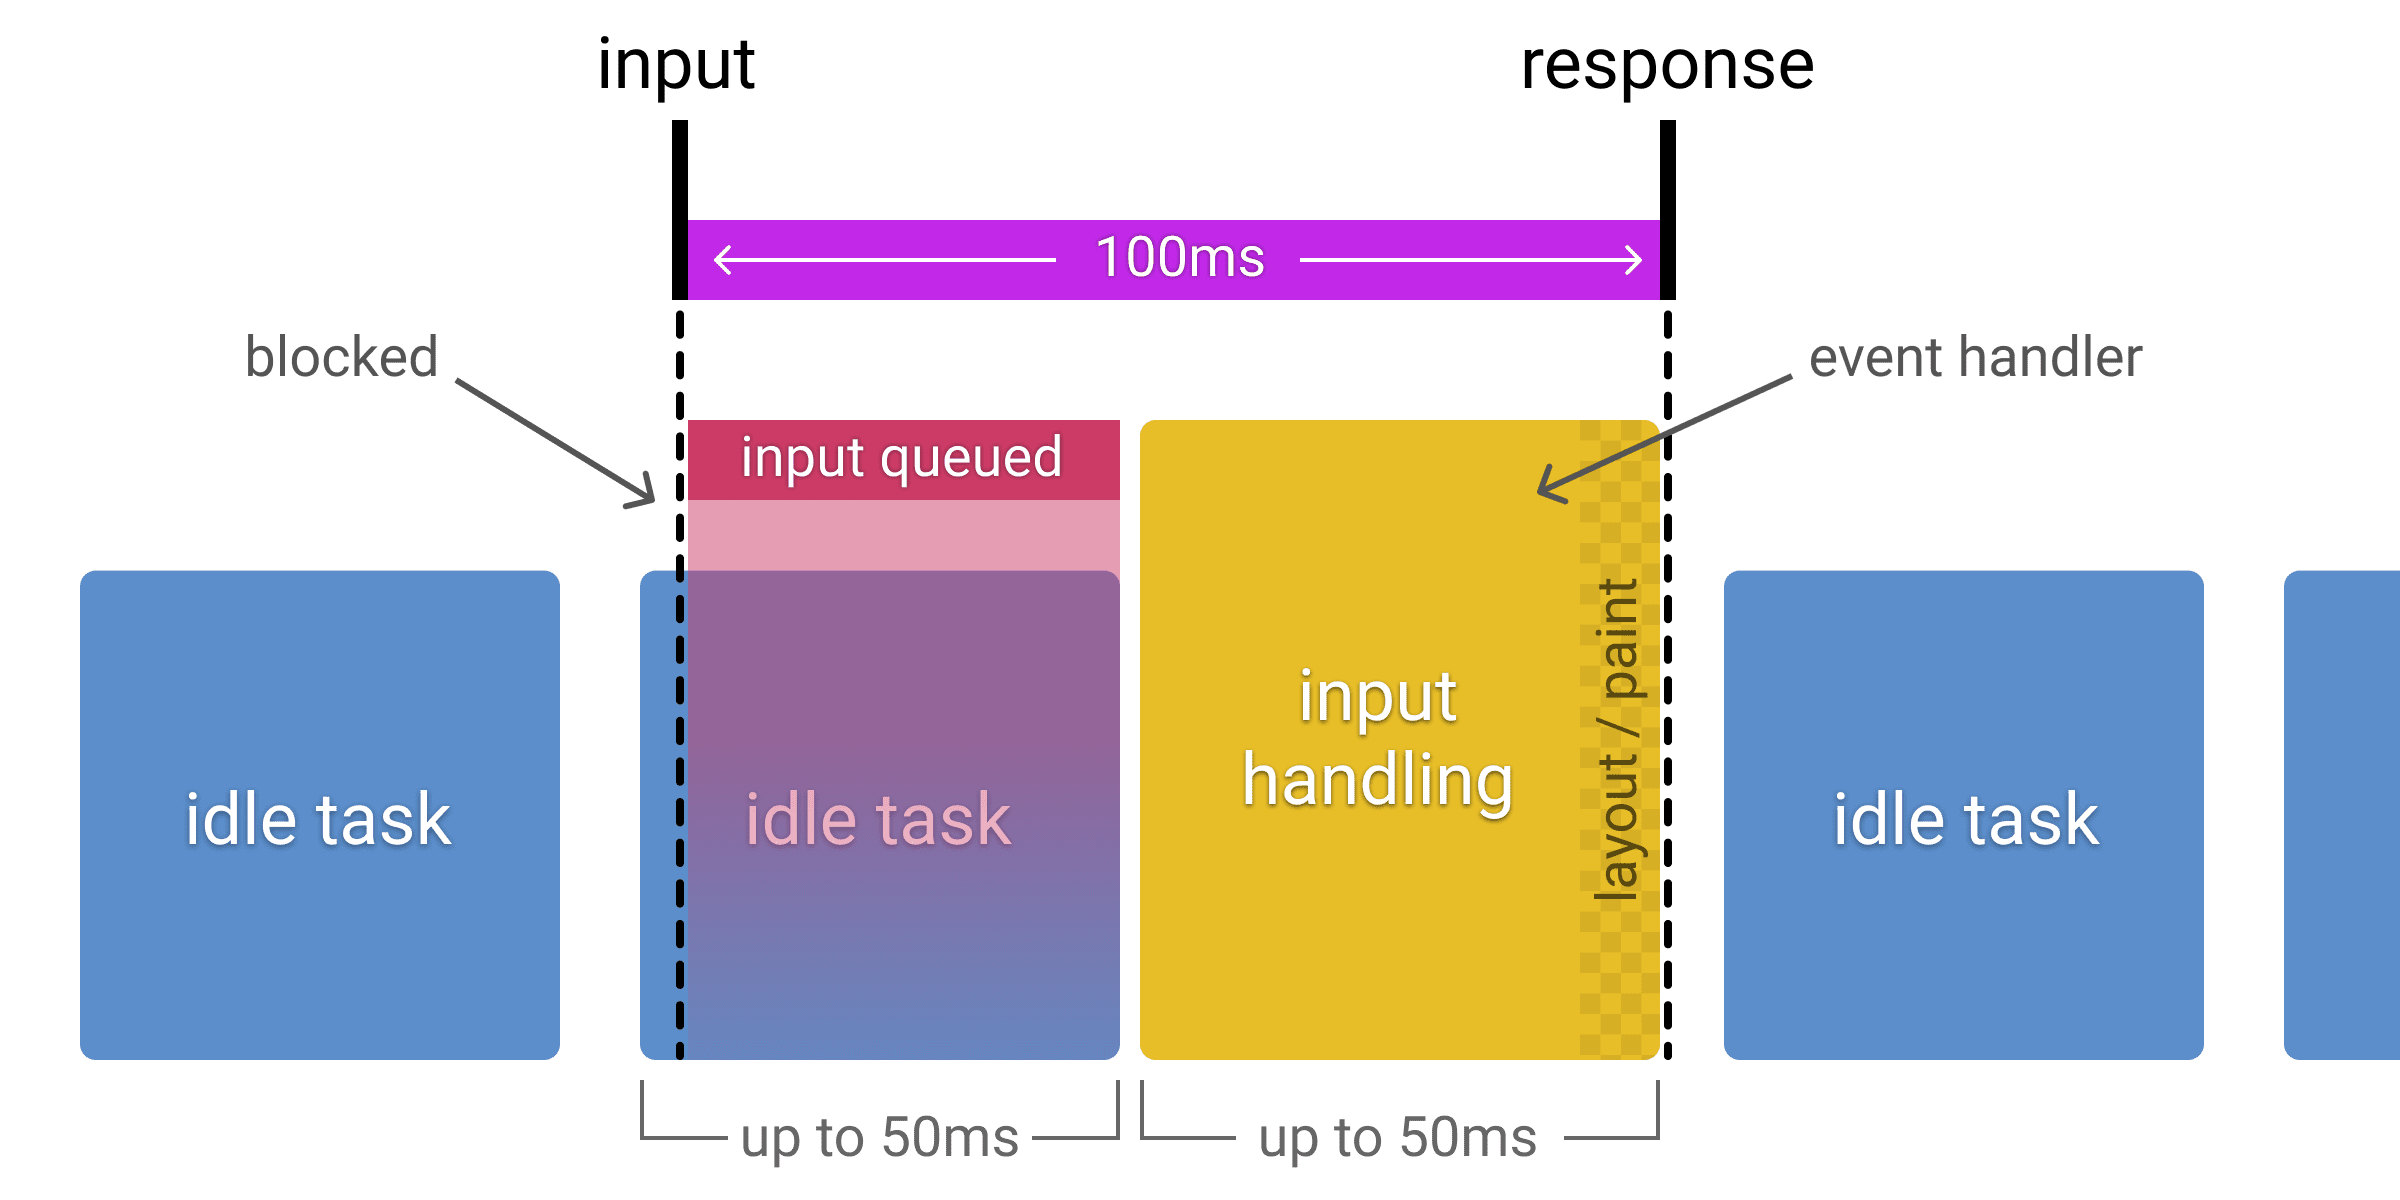 這張圖表顯示在閒置工作期間如何接收輸入內容，並將可用的輸入處理時間縮短至 50 毫秒